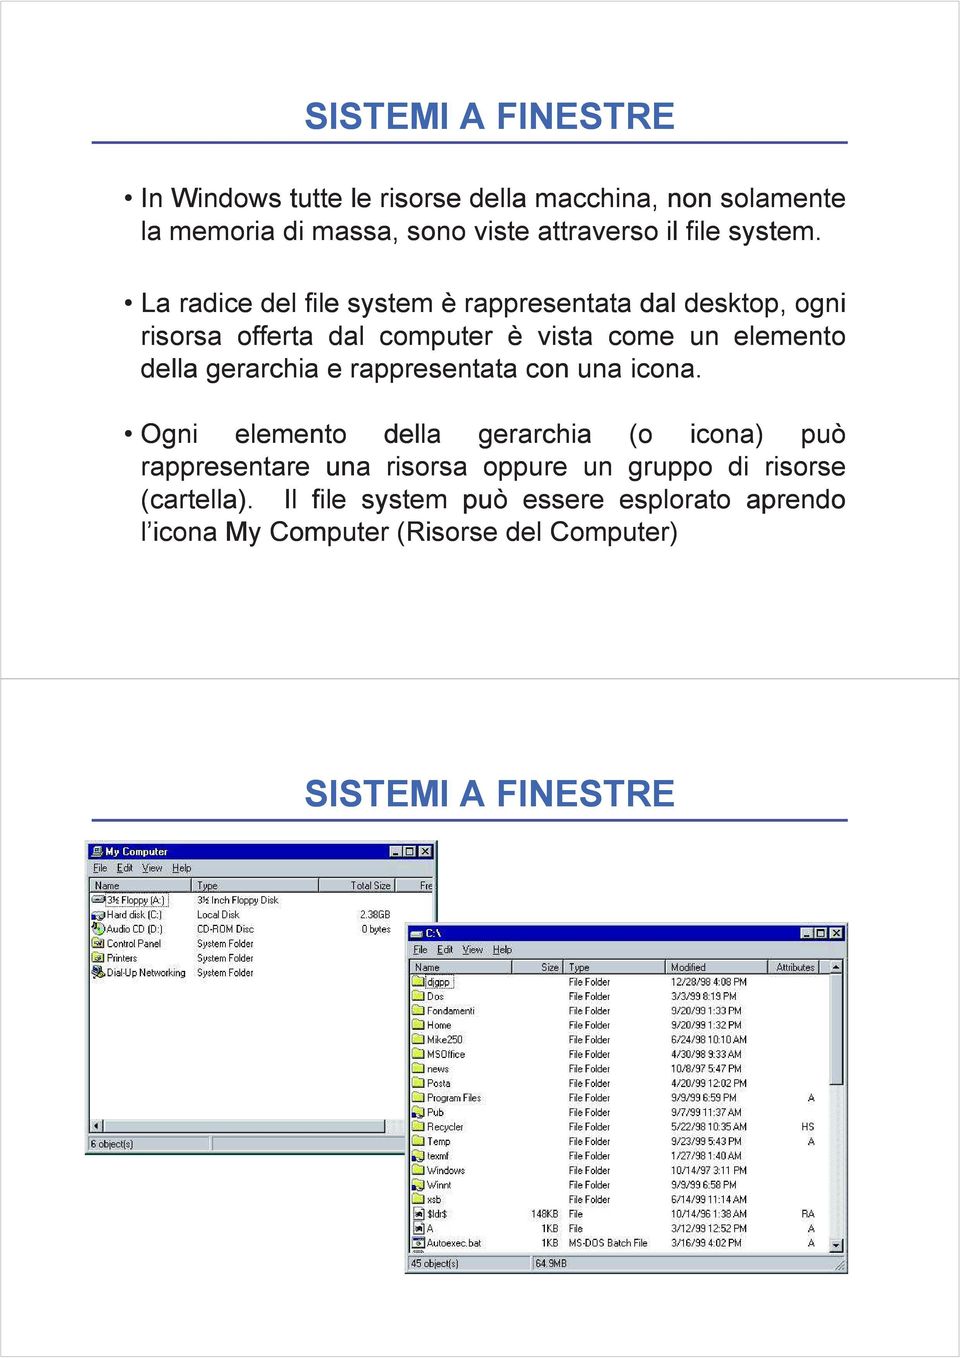 La radice del file system è rappresentata dal desktop, ogni risorsa offerta dal computer è vista come un elemento della